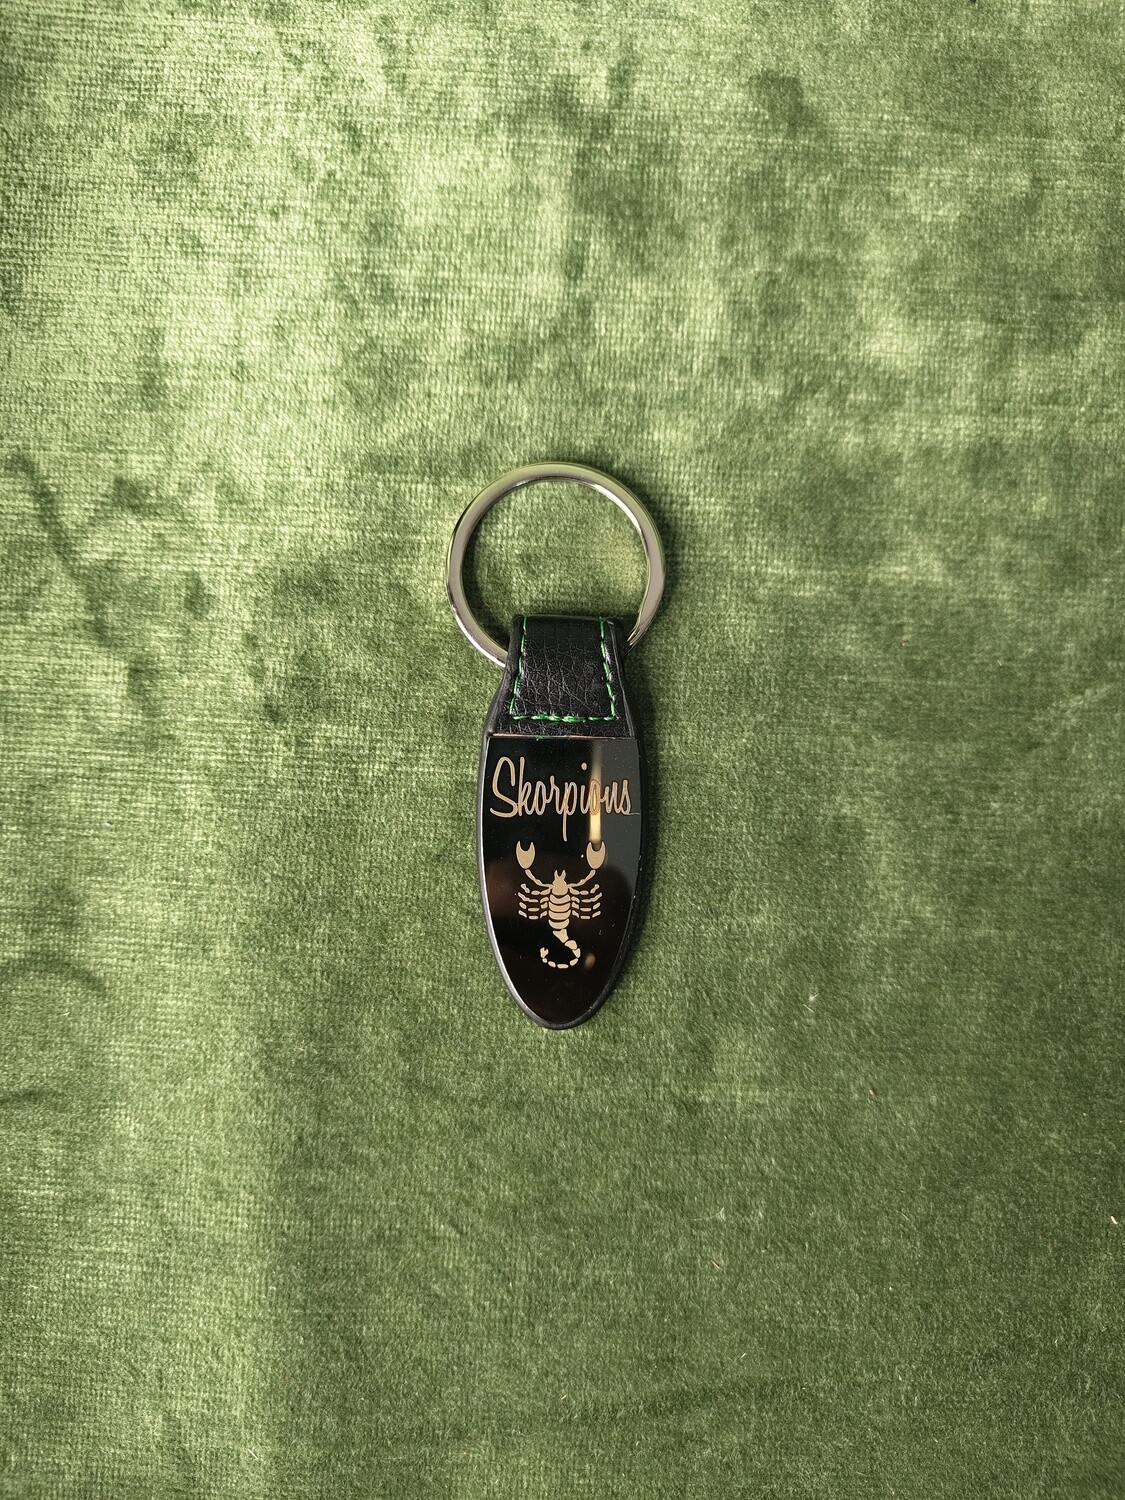 Metāla atslēgu piekariņš ar gravējumu "Skorpions"